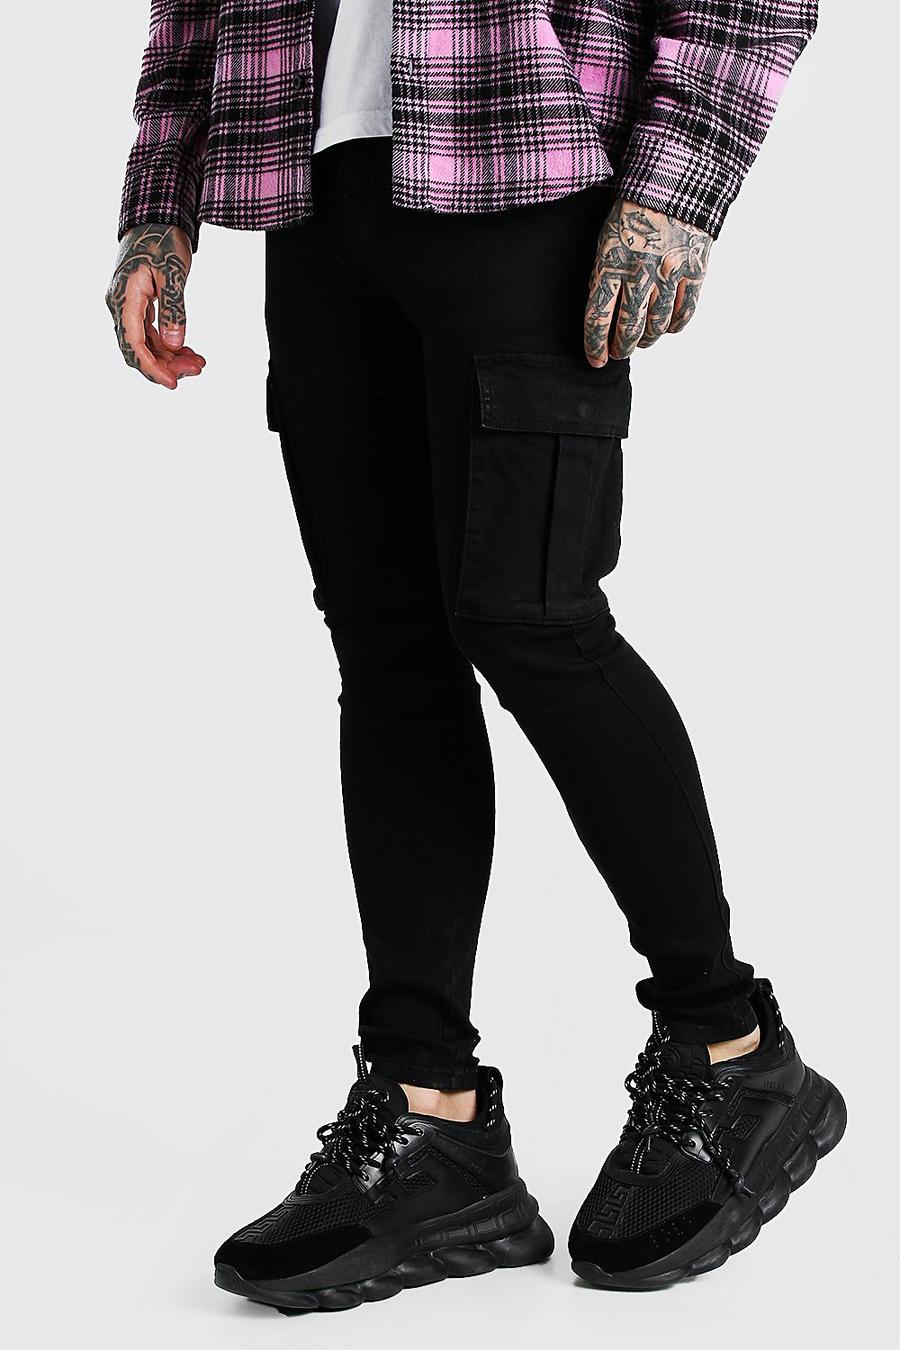 שחור אמיתי סופר סקיני ג'ינס בסגנון דגמ'ח